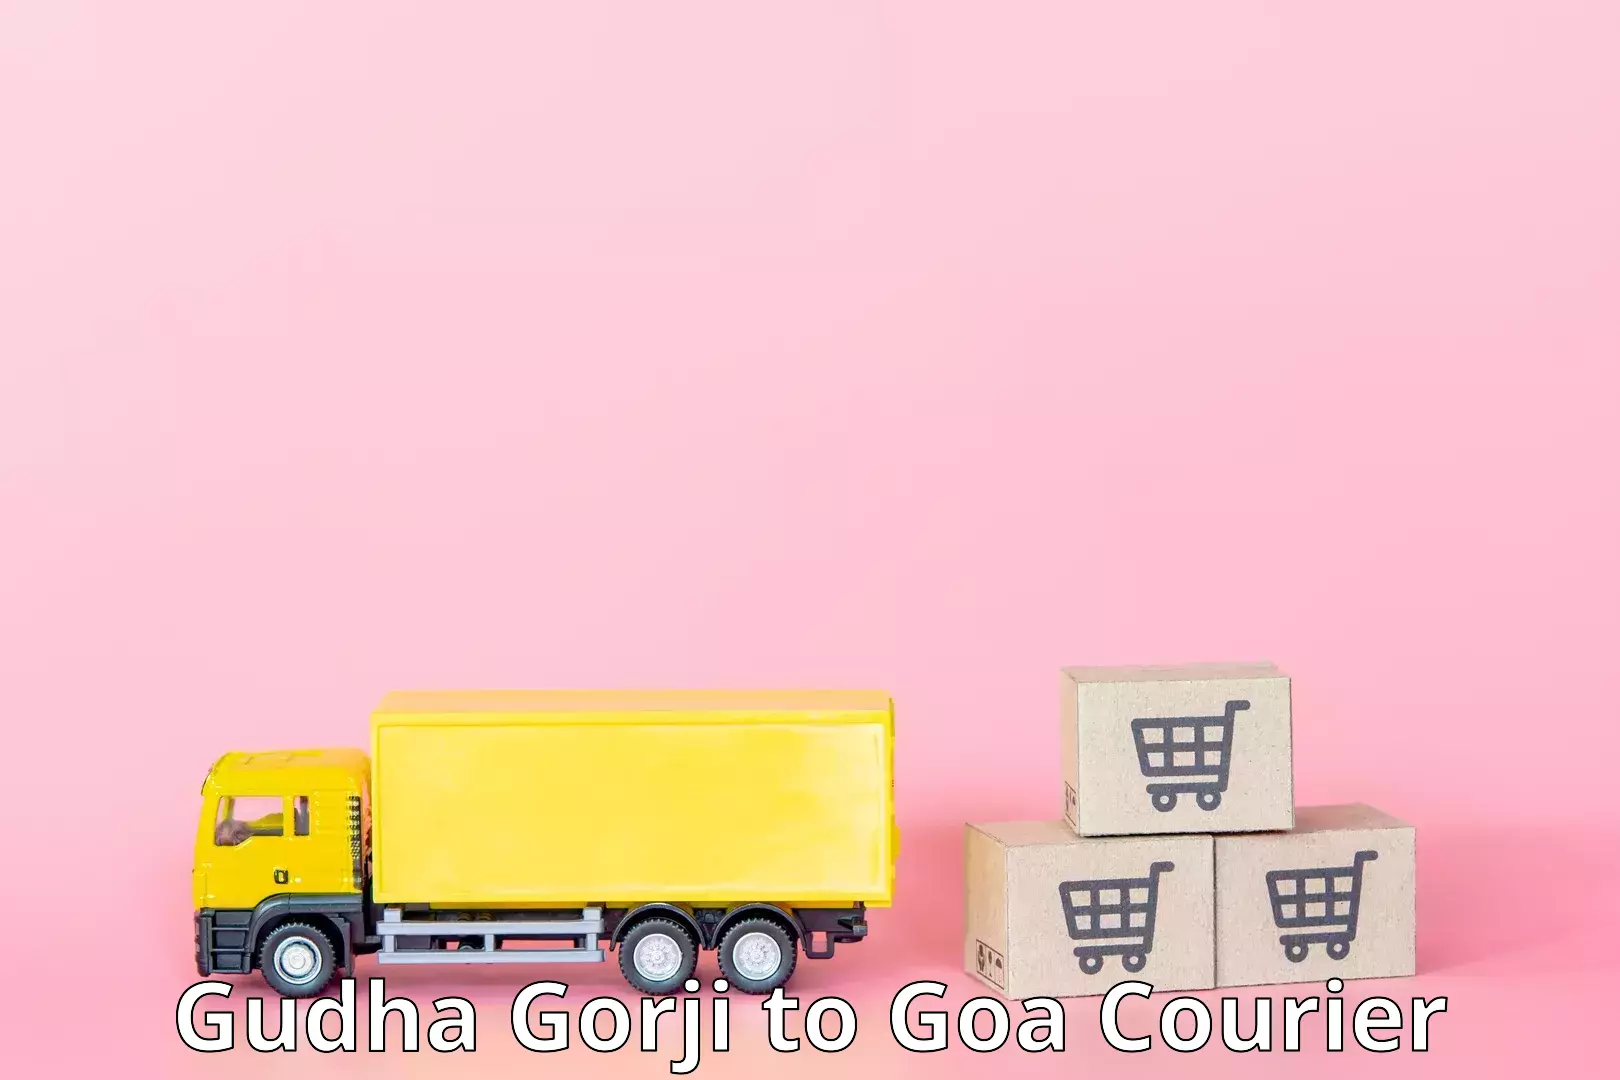 Customizable delivery plans Gudha Gorji to Goa